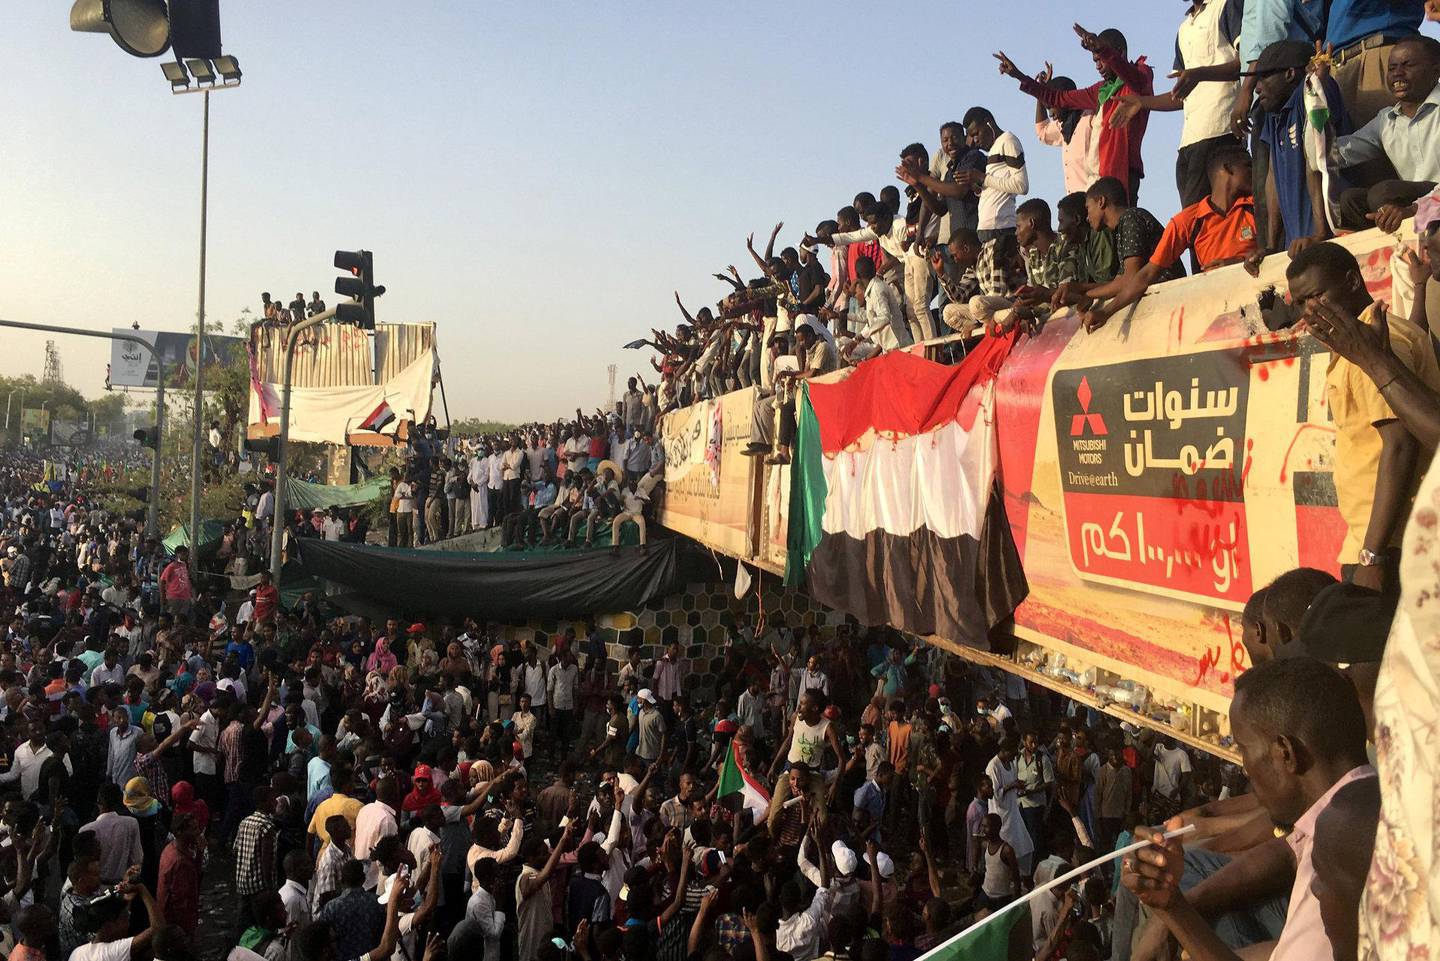 MANGE: Demonstrantene utenfor forsvarsdepartementet i Khartoum. FOTO: NTB SCANPIX